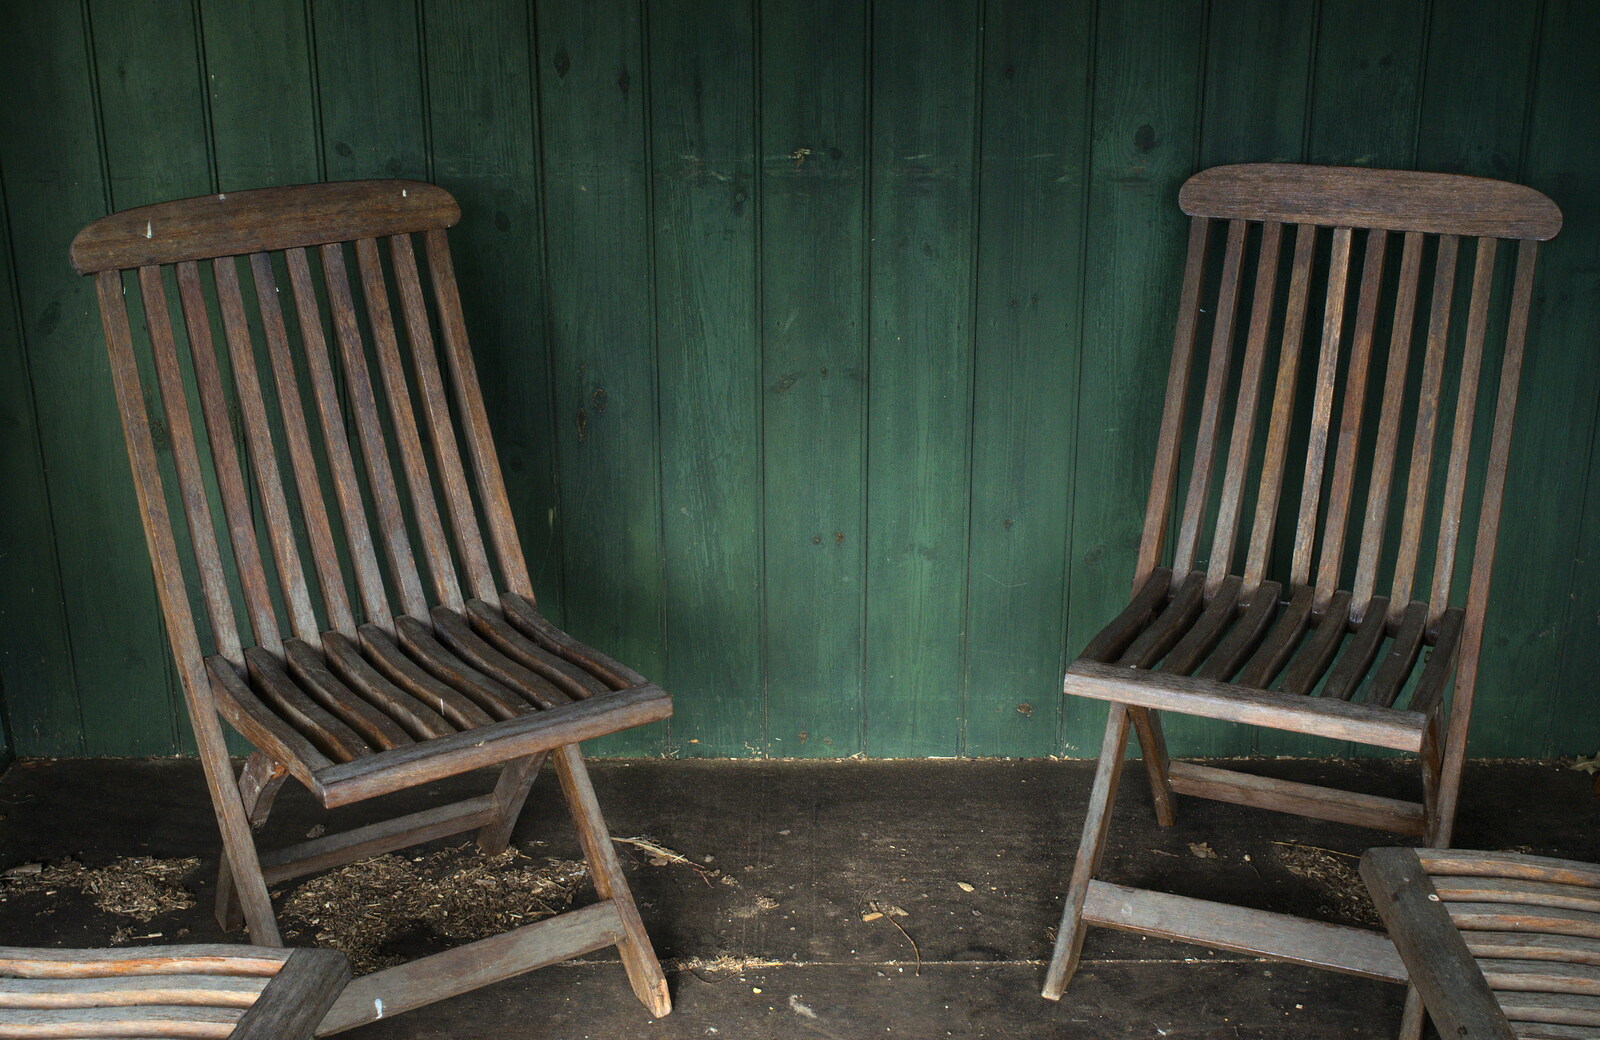 A pair of teak garden chairs from A Walk around Bressingham Winter Garden, Bressingham, Norfolk - 3rd March 2013